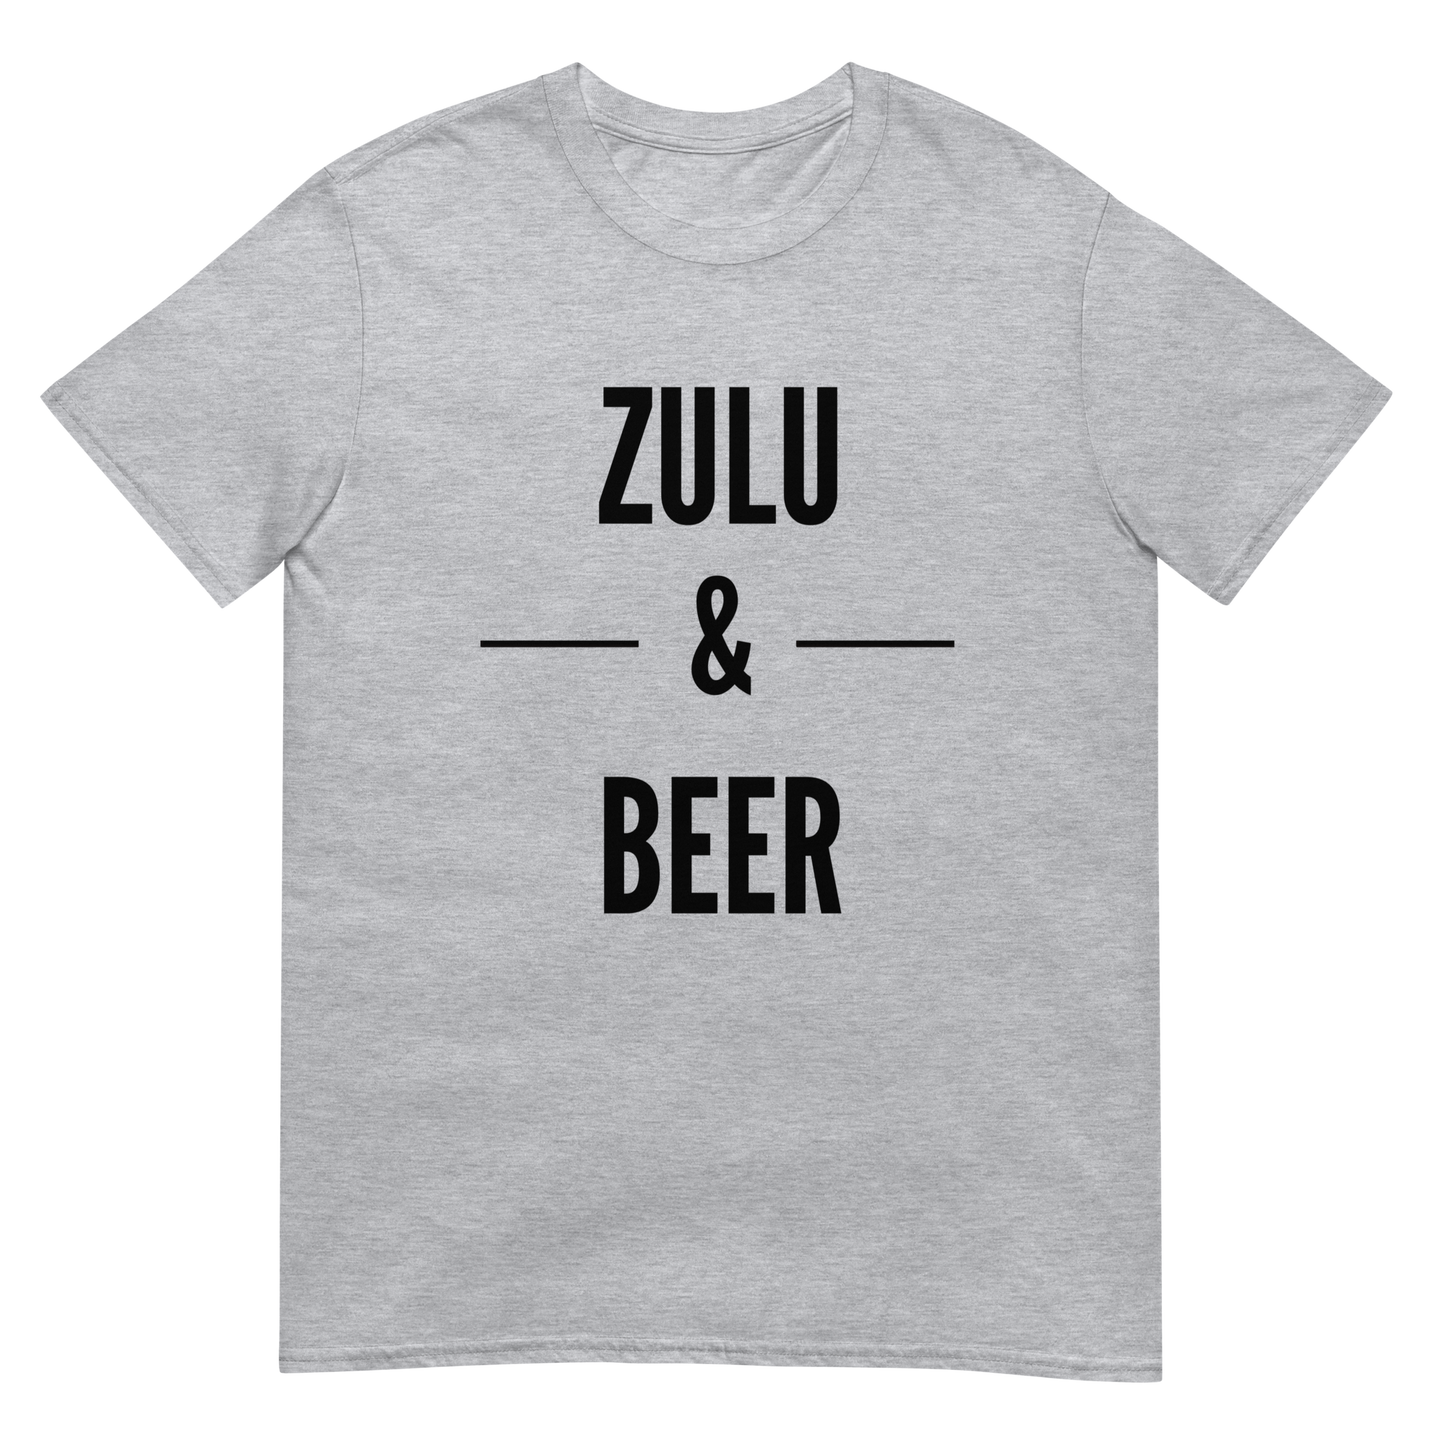 Zulu & Beer (t-shirt)